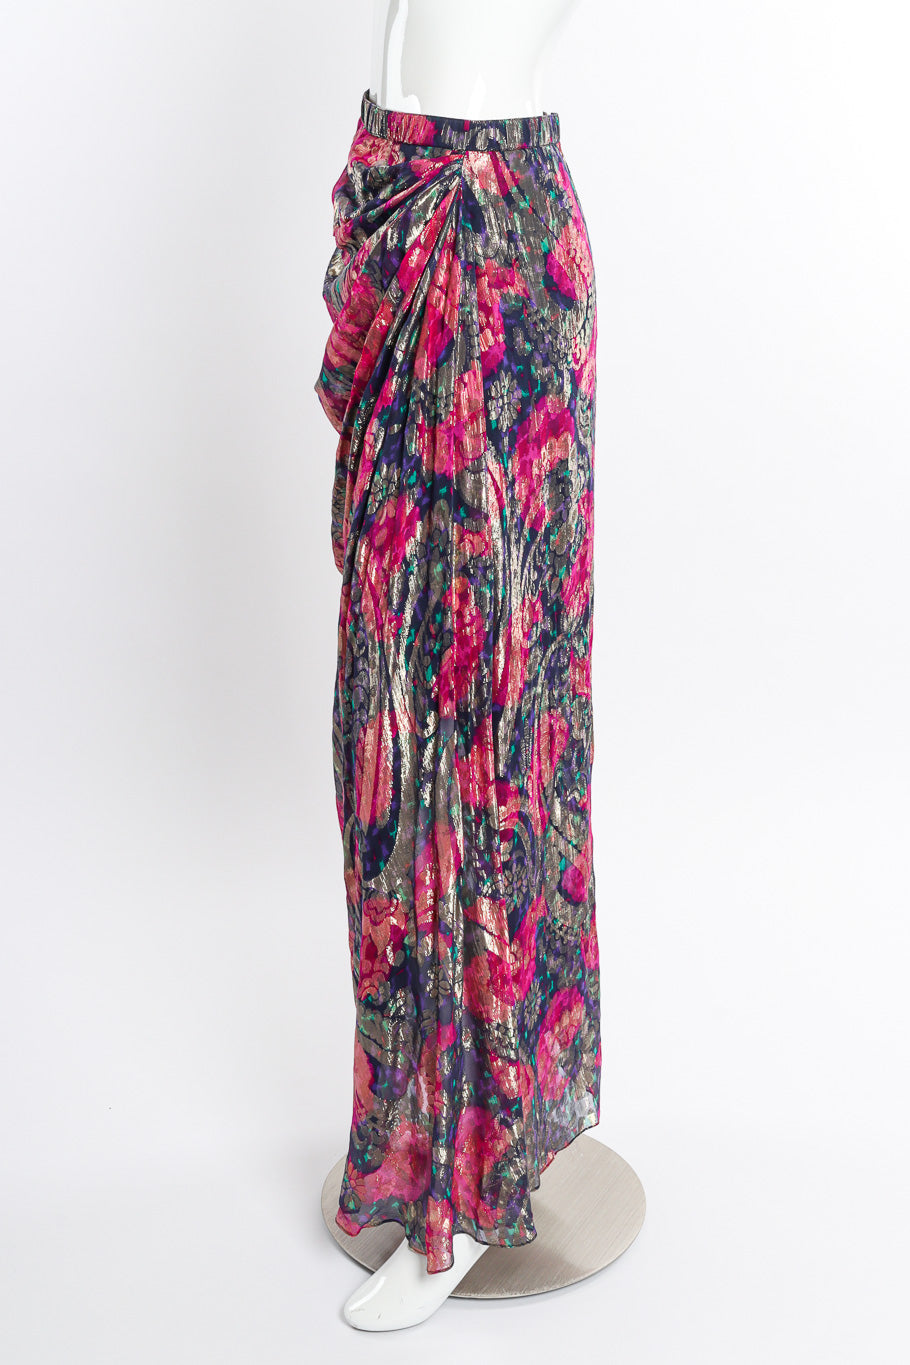 Vintage Adolfo Floral Metallic Skirt side on mannequin @recessla